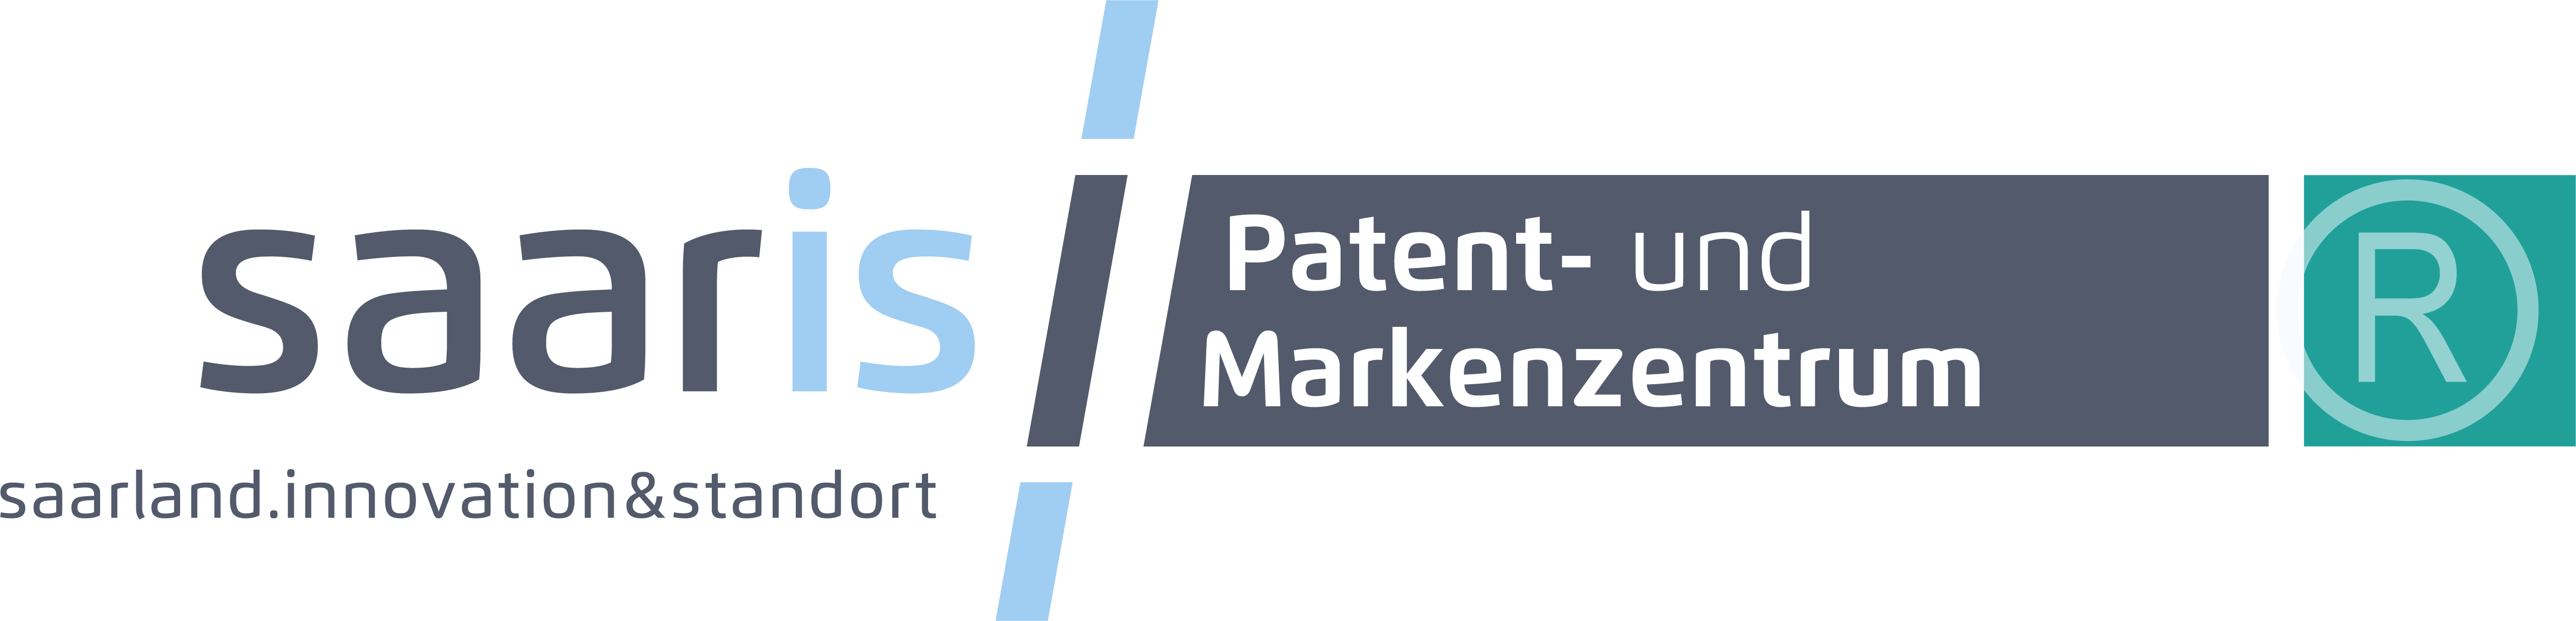 saaris Patent- und Markenzentrum